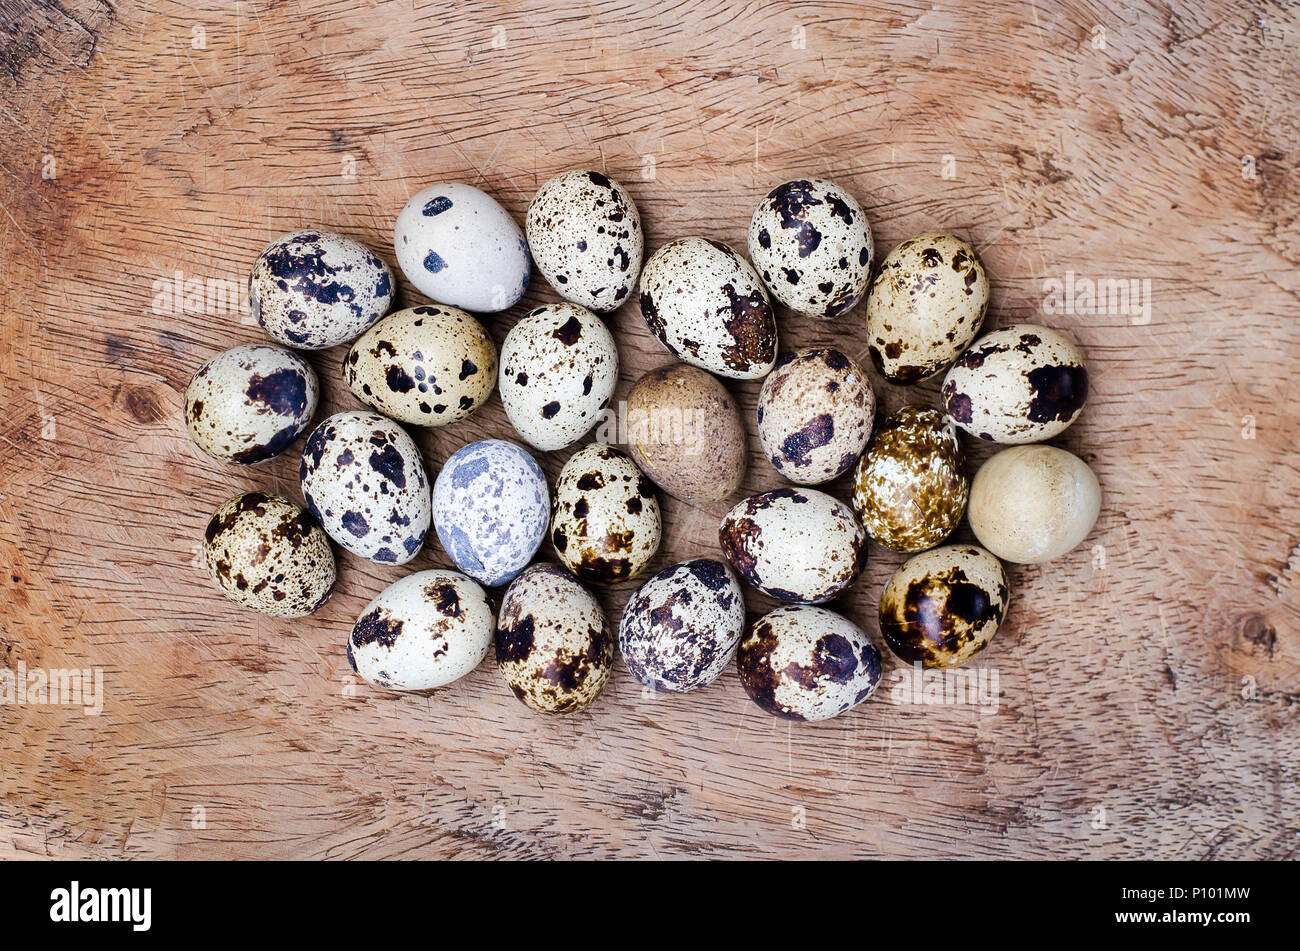 Delicate uova di quaglia con affascinanti macchie marroni, in attesa di avventure culinarie nelle loro piccole conchiglie. Foto Stock